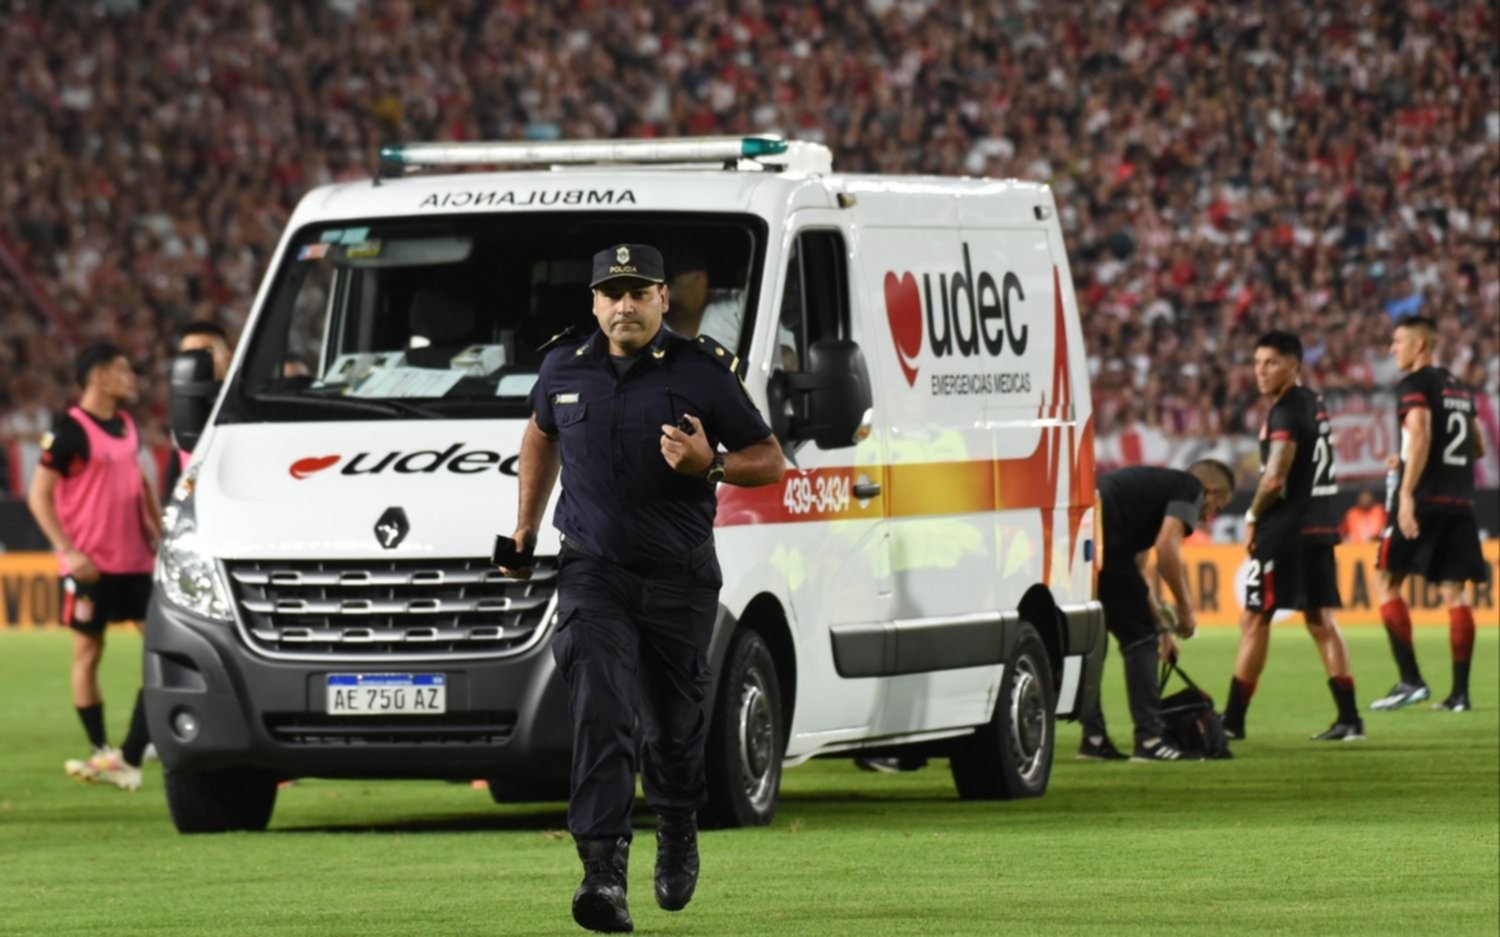 Estudiantes vs Boca.- Partido suspendido por el cuadro médico de Javier Altamirano, que fue retirado del estadio en ambulancia